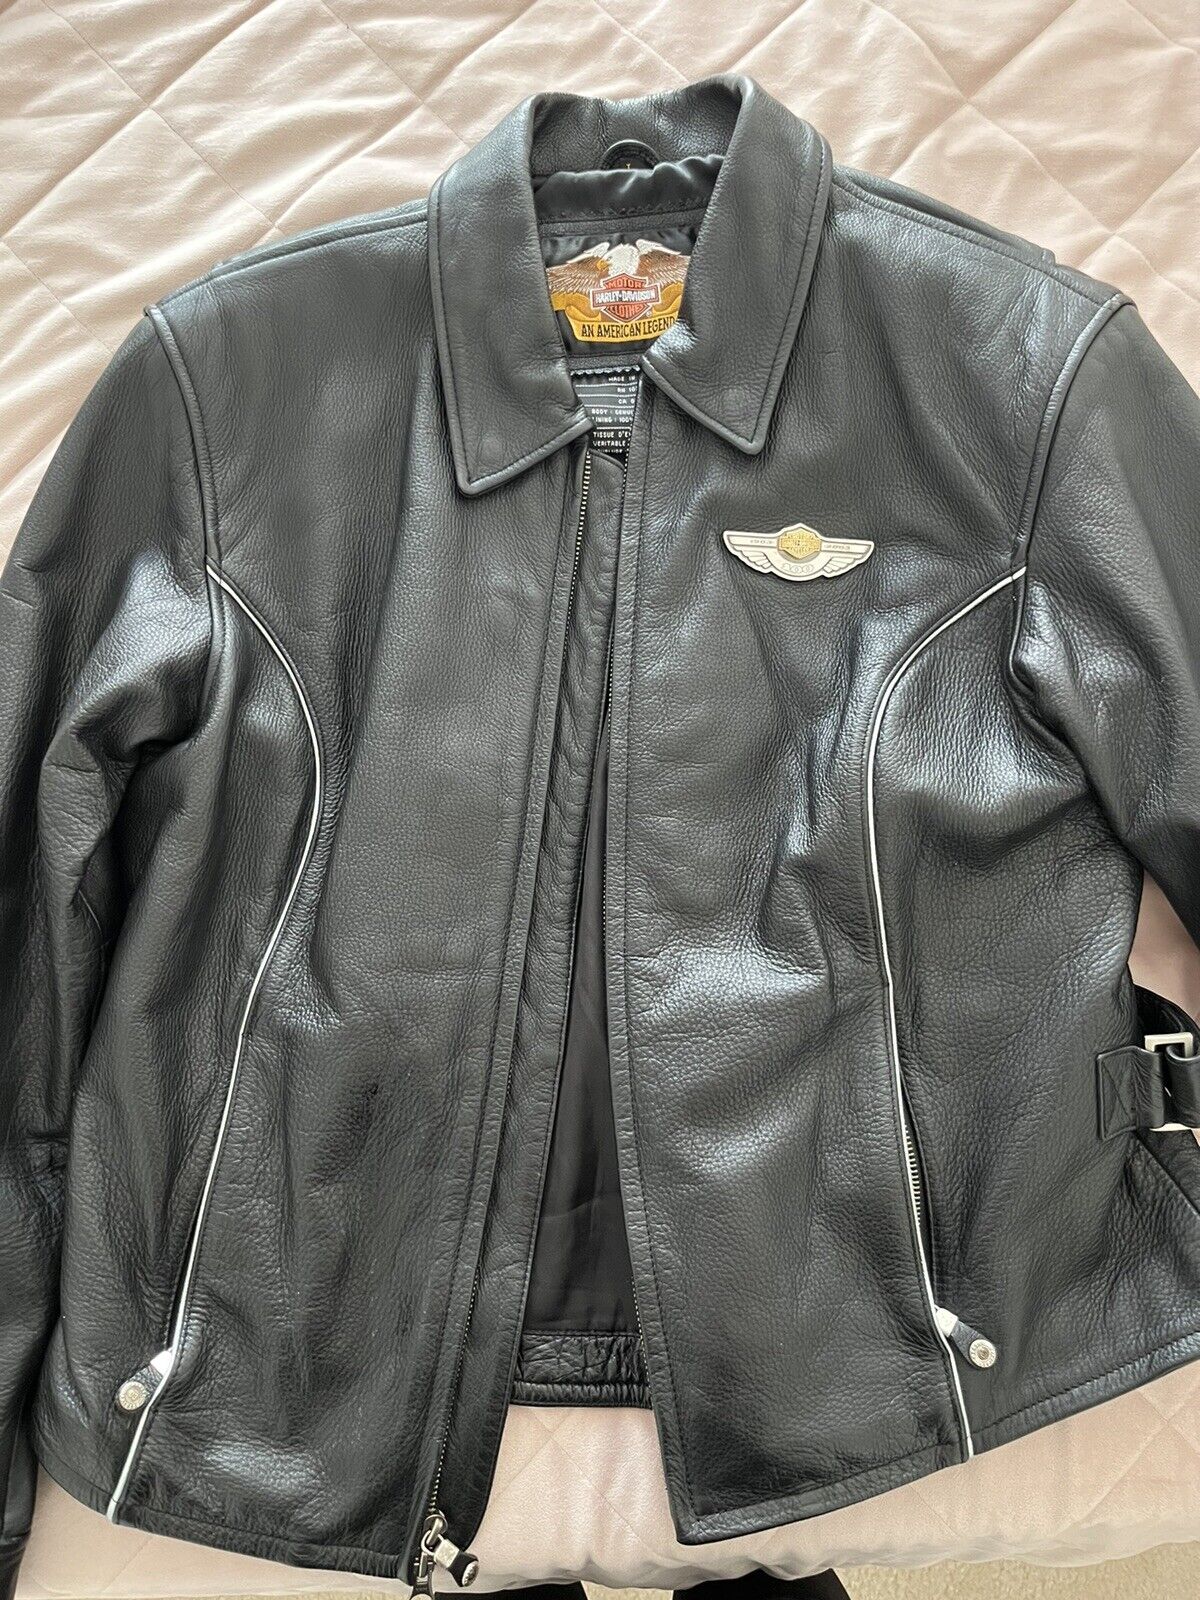 Harley Davidson Women’s 100 Year Leather Jacket Large EUC